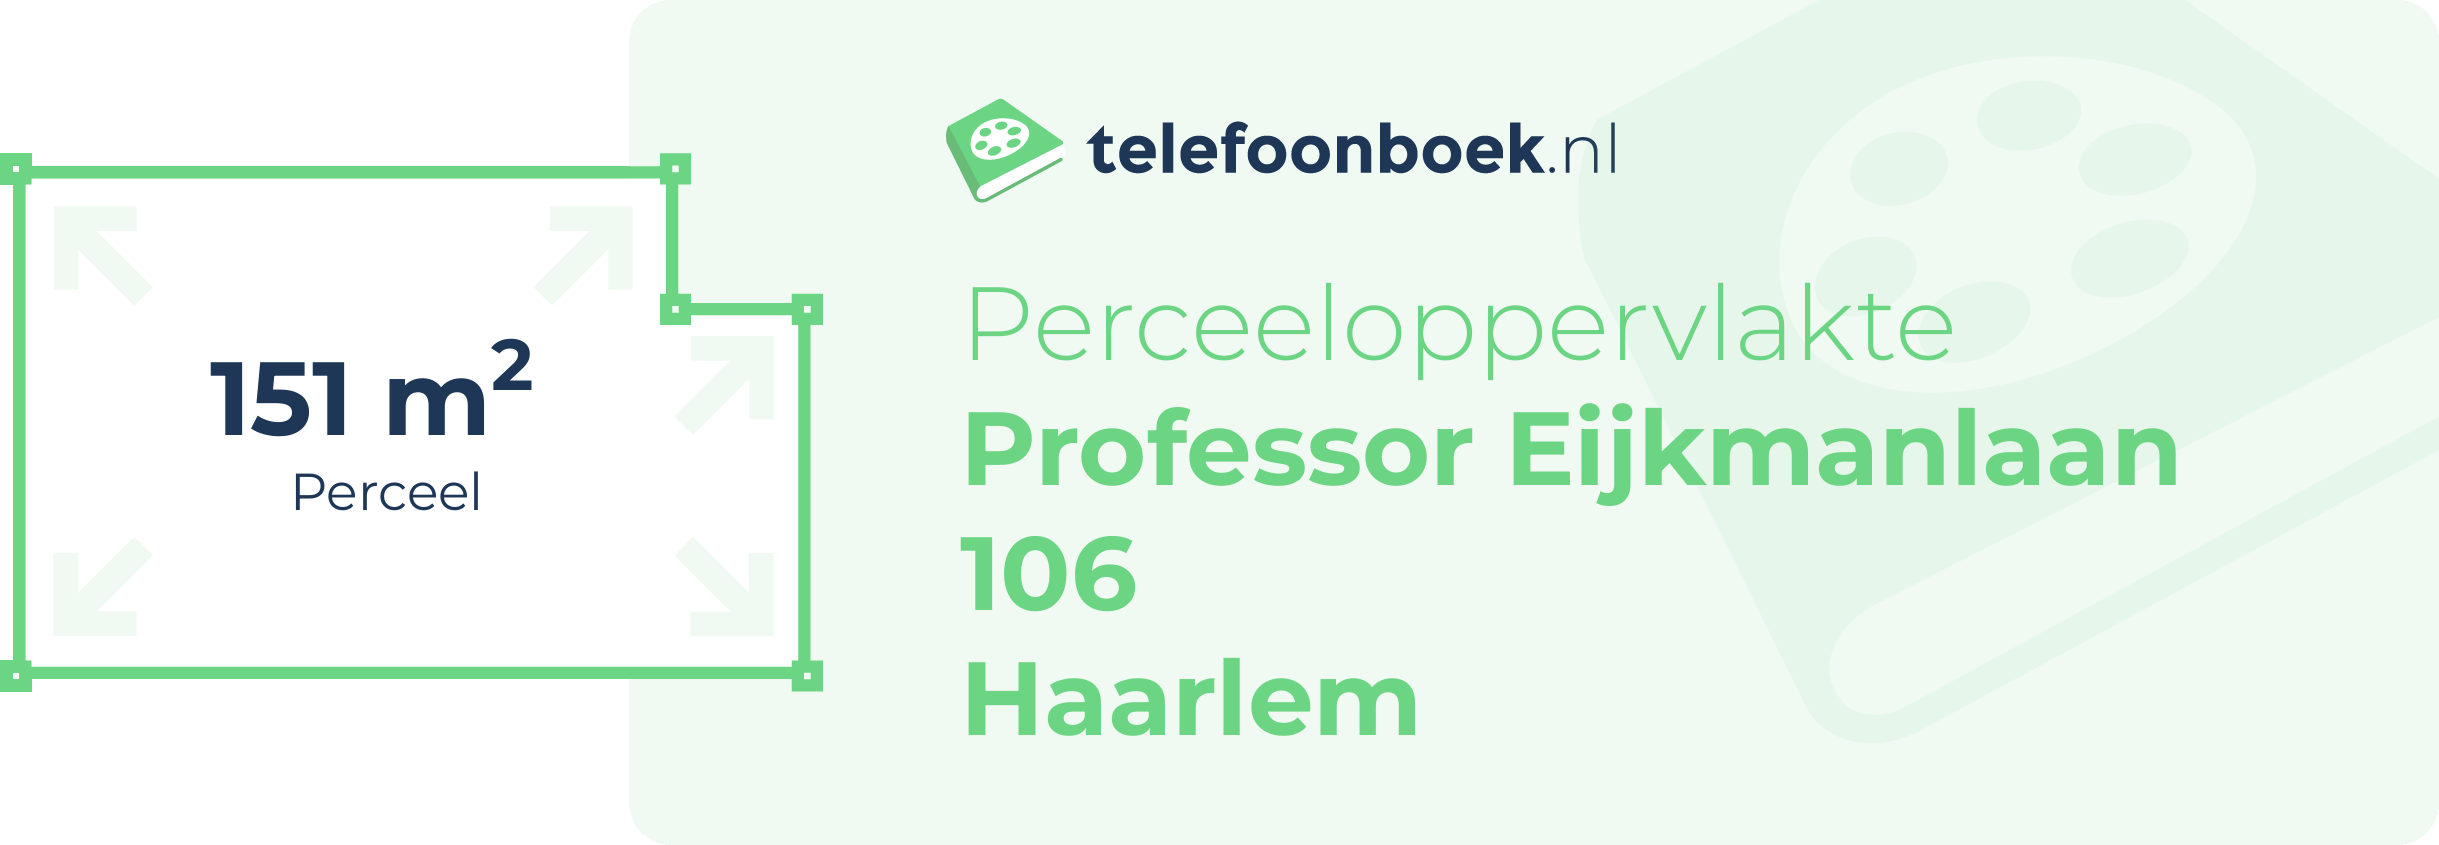 Perceeloppervlakte Professor Eijkmanlaan 106 Haarlem